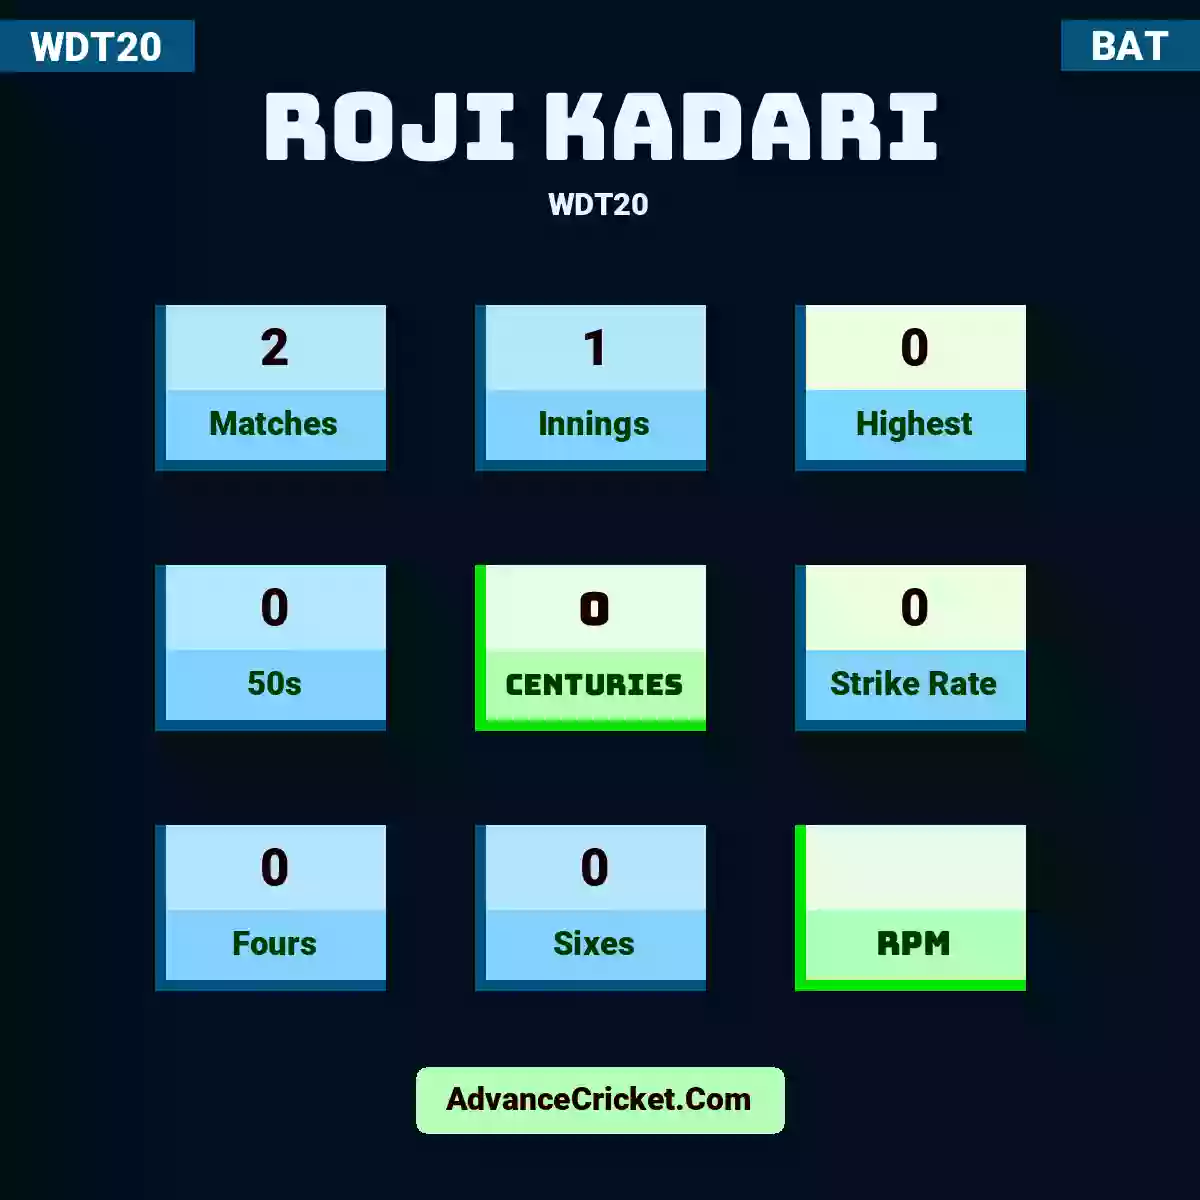 Roji Kadari WDT20 , Roji Kadari played 2 matches, scored 0 runs as highest, 0 half-centuries, and 0 centuries, with a strike rate of 0. R.Kadari hit 0 fours and 0 sixes.